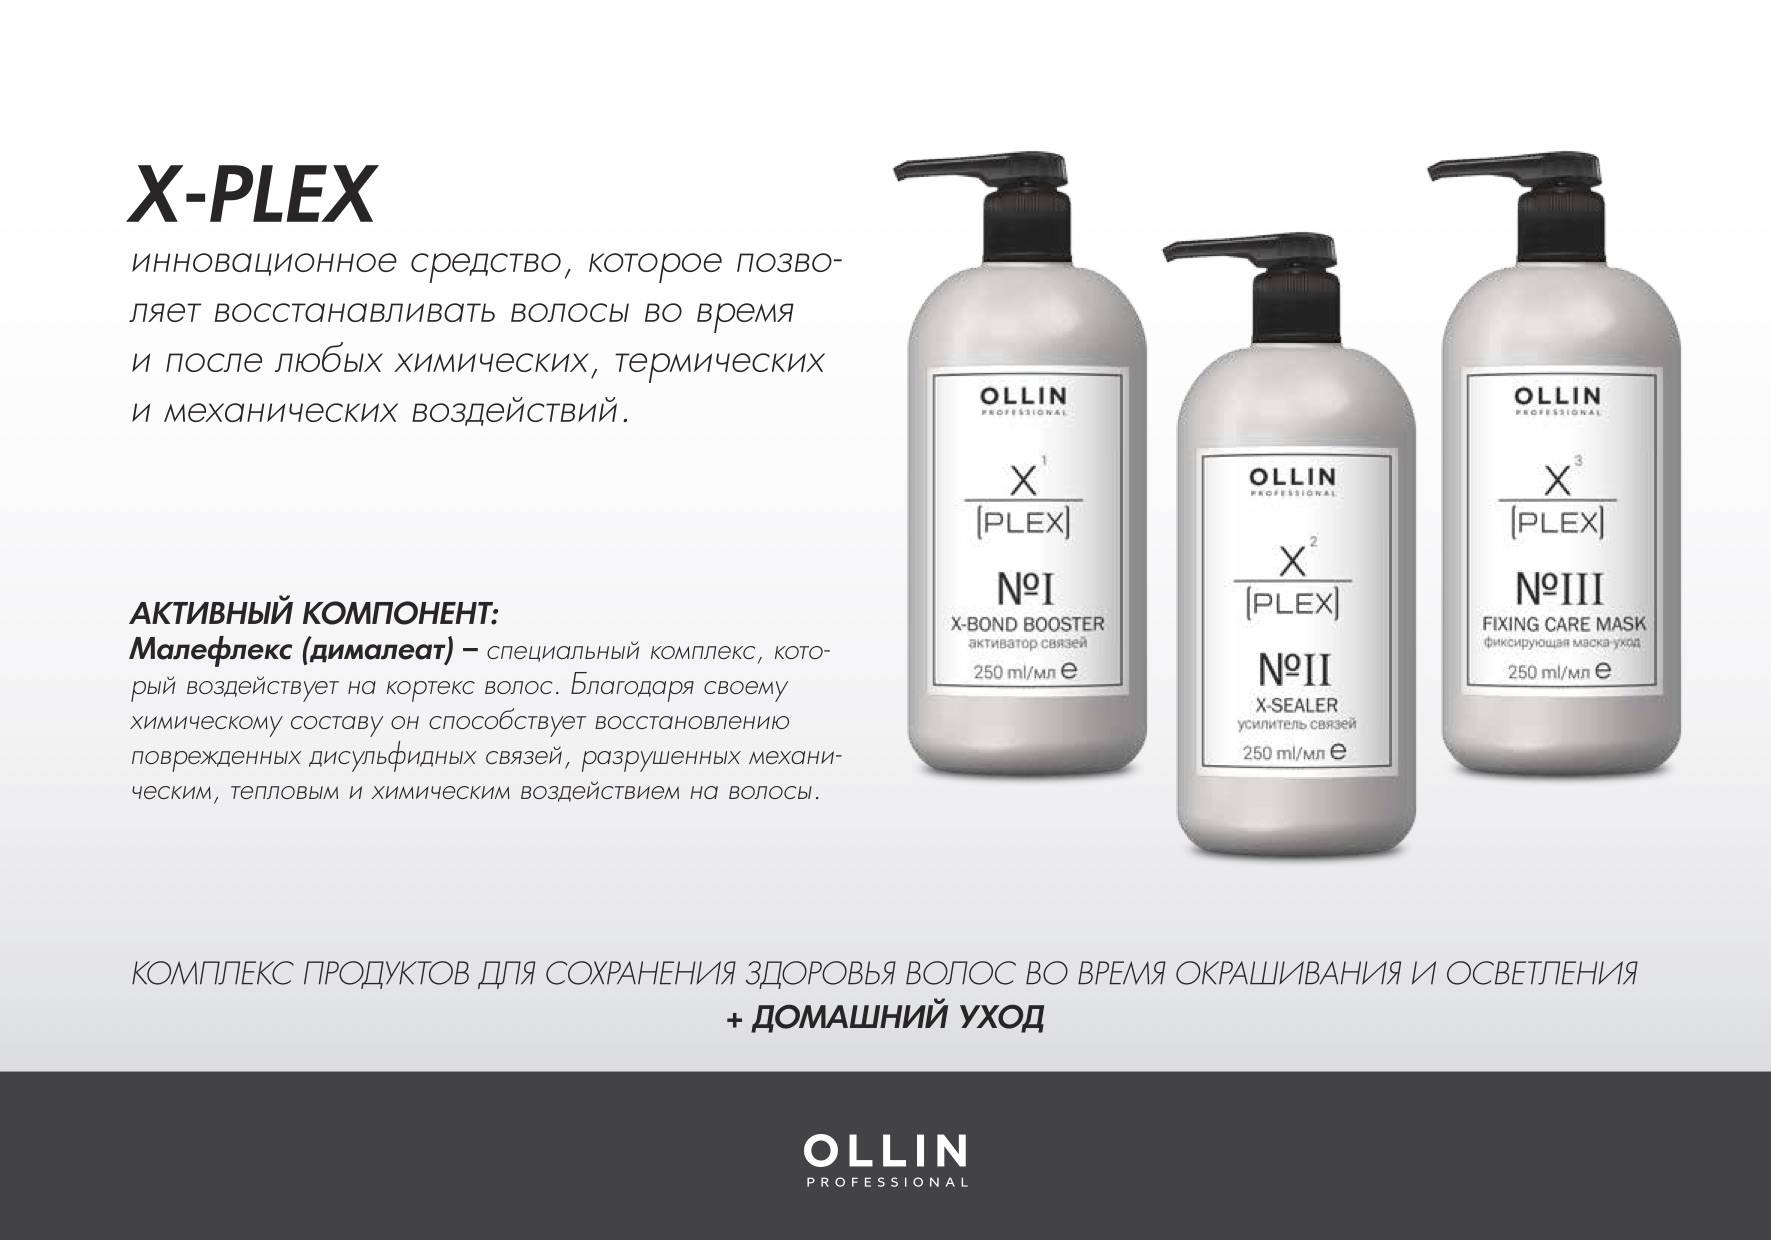 Восстанавливающие средства для волос. Ollin x-Plex набор. Plex Ollin для волос. Ollin, набор №1 (активатор связей 1х250 мл; усилитель связей 2х250 мл) x-Plex. Ollin professional x-Plex x-Sealer no2.